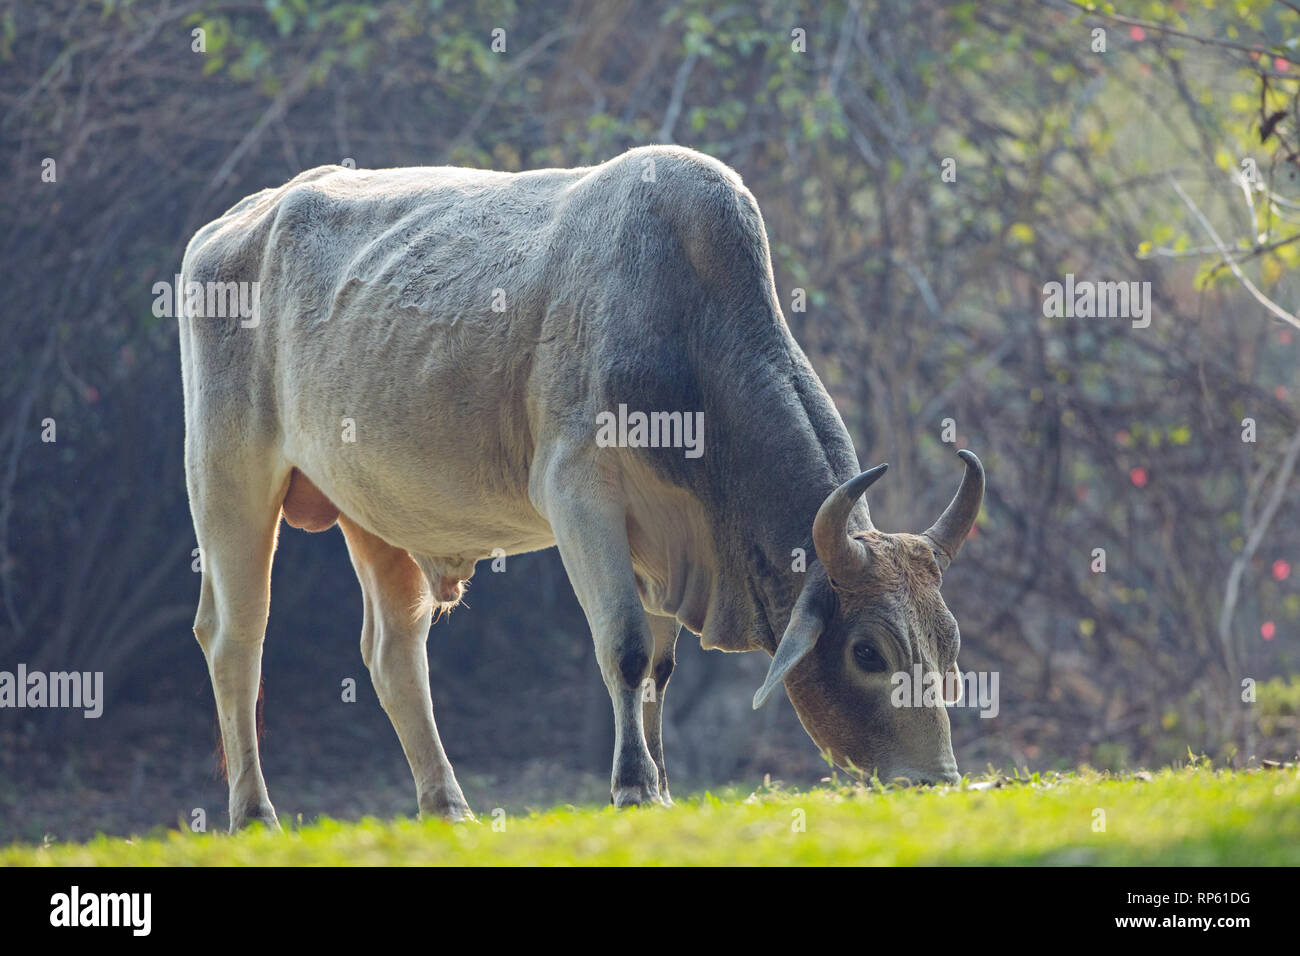 Zébu (Bos indicus) Bull, ou des hommes. Le pâturage. L'Inde. Banque D'Images